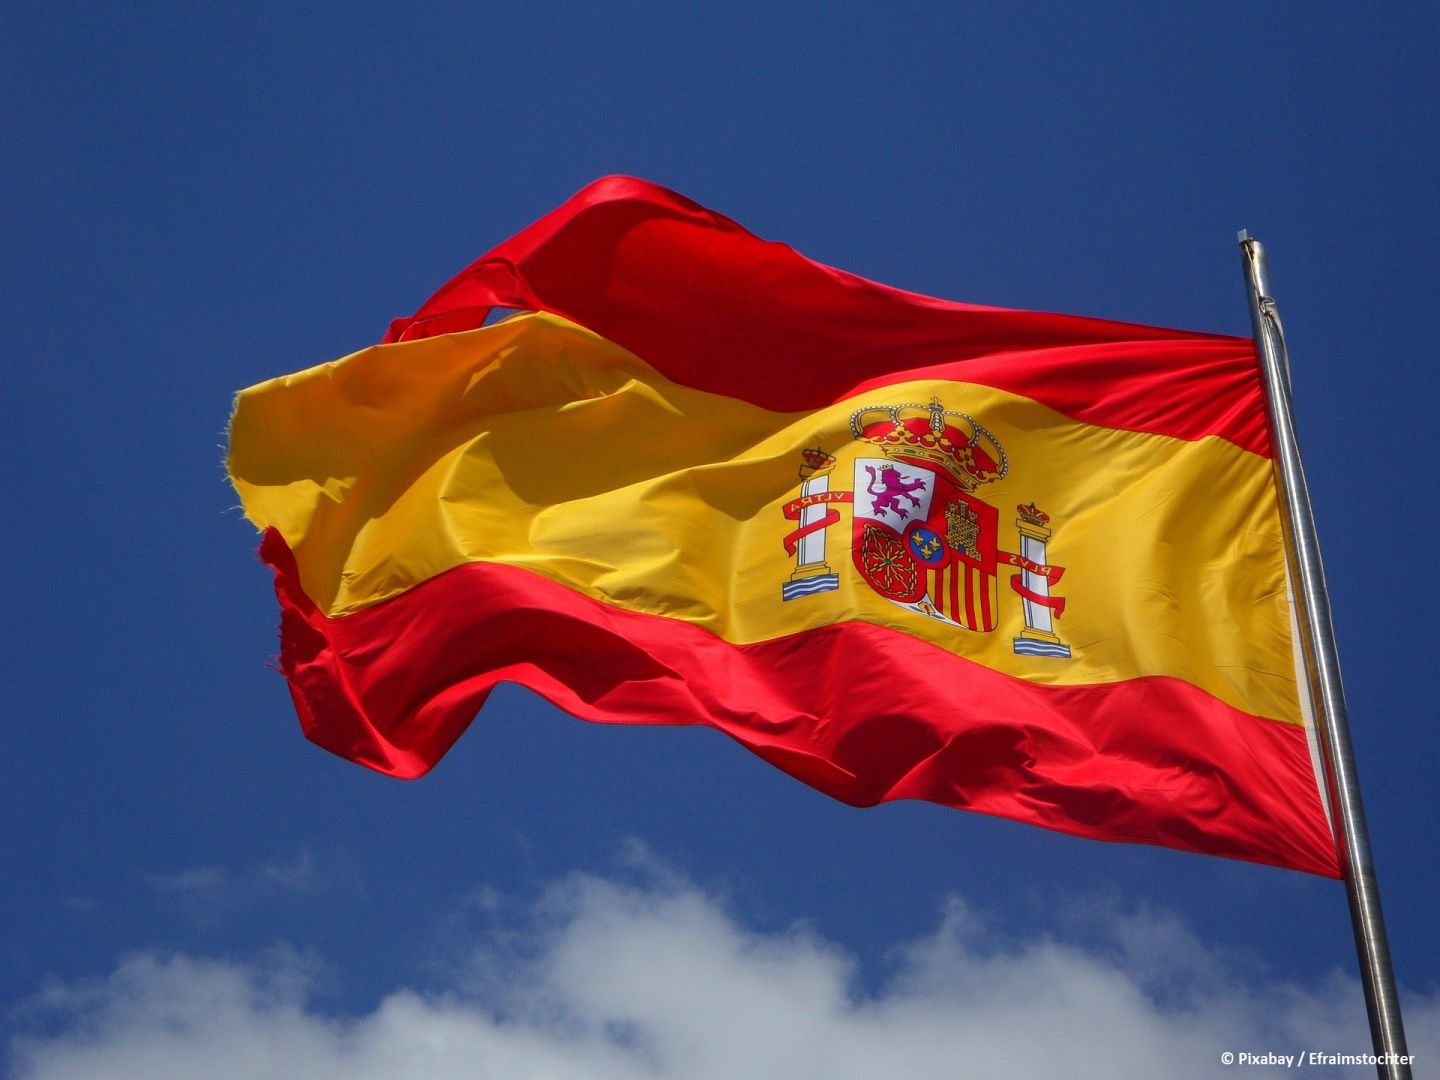 Spaniens Premierminister hat beschlossen, das Parlament aufzulösen und für den 23. Juli Wahlen anzusetzen